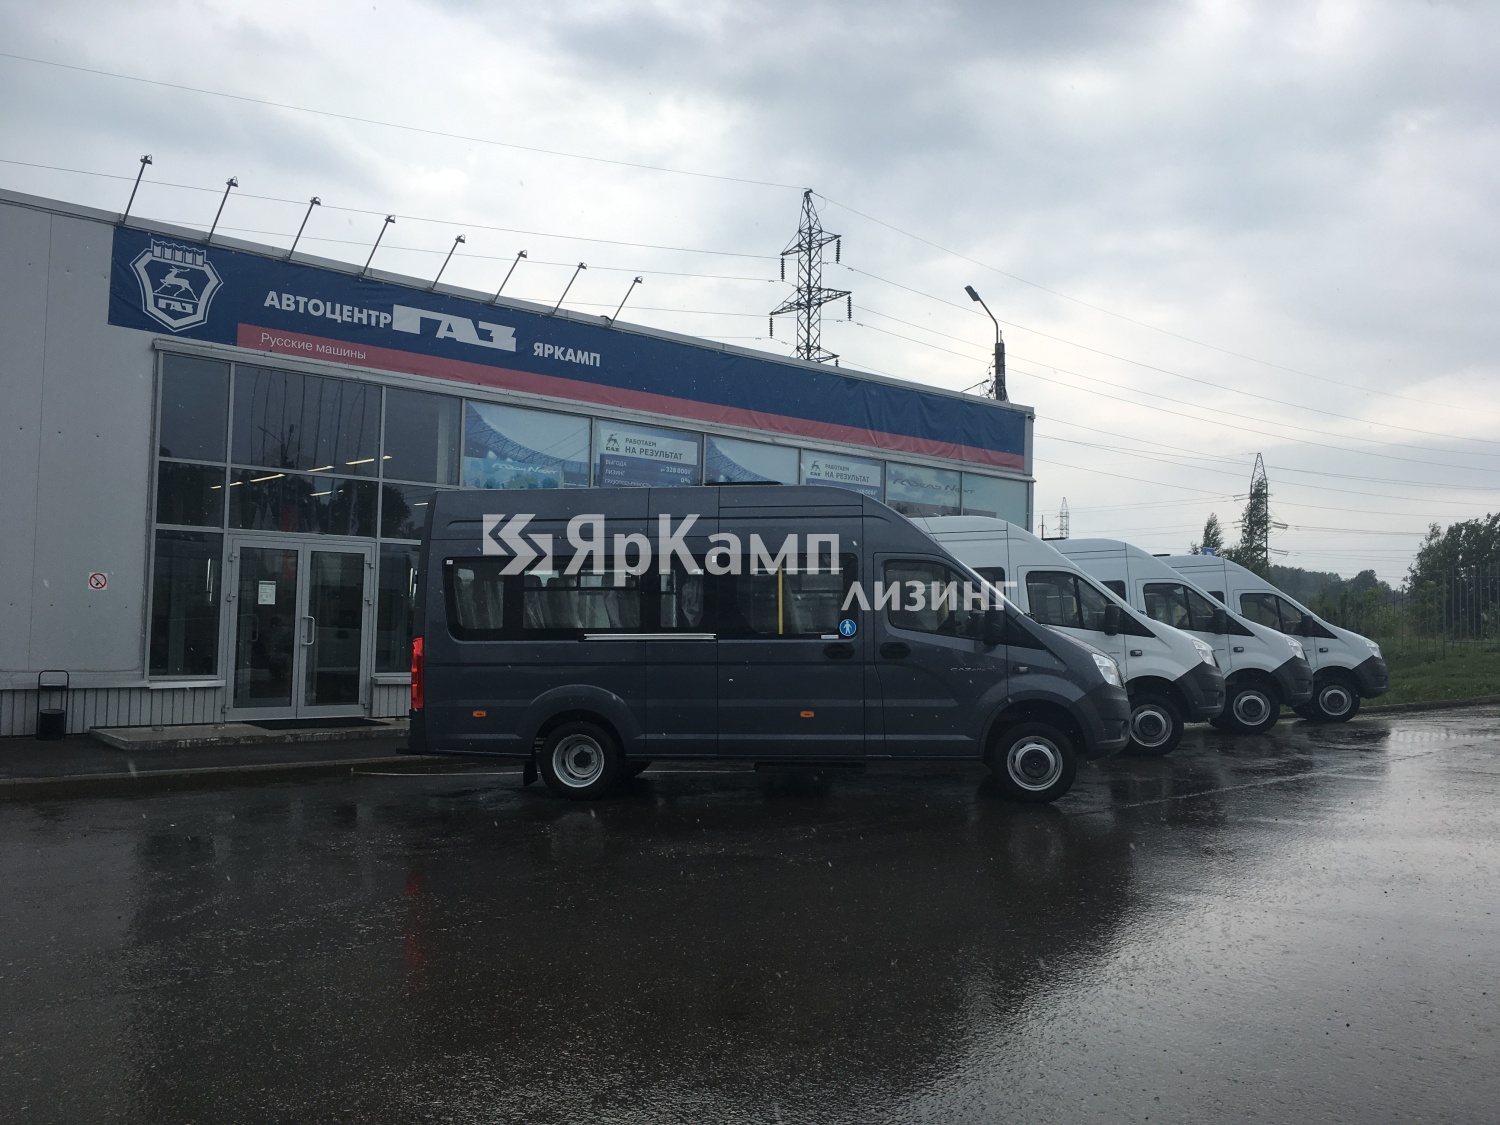 "ЯрКамп-Лизинг" передал в финансовую аренду четыре автобуса класса А ГАЗ-A65R32